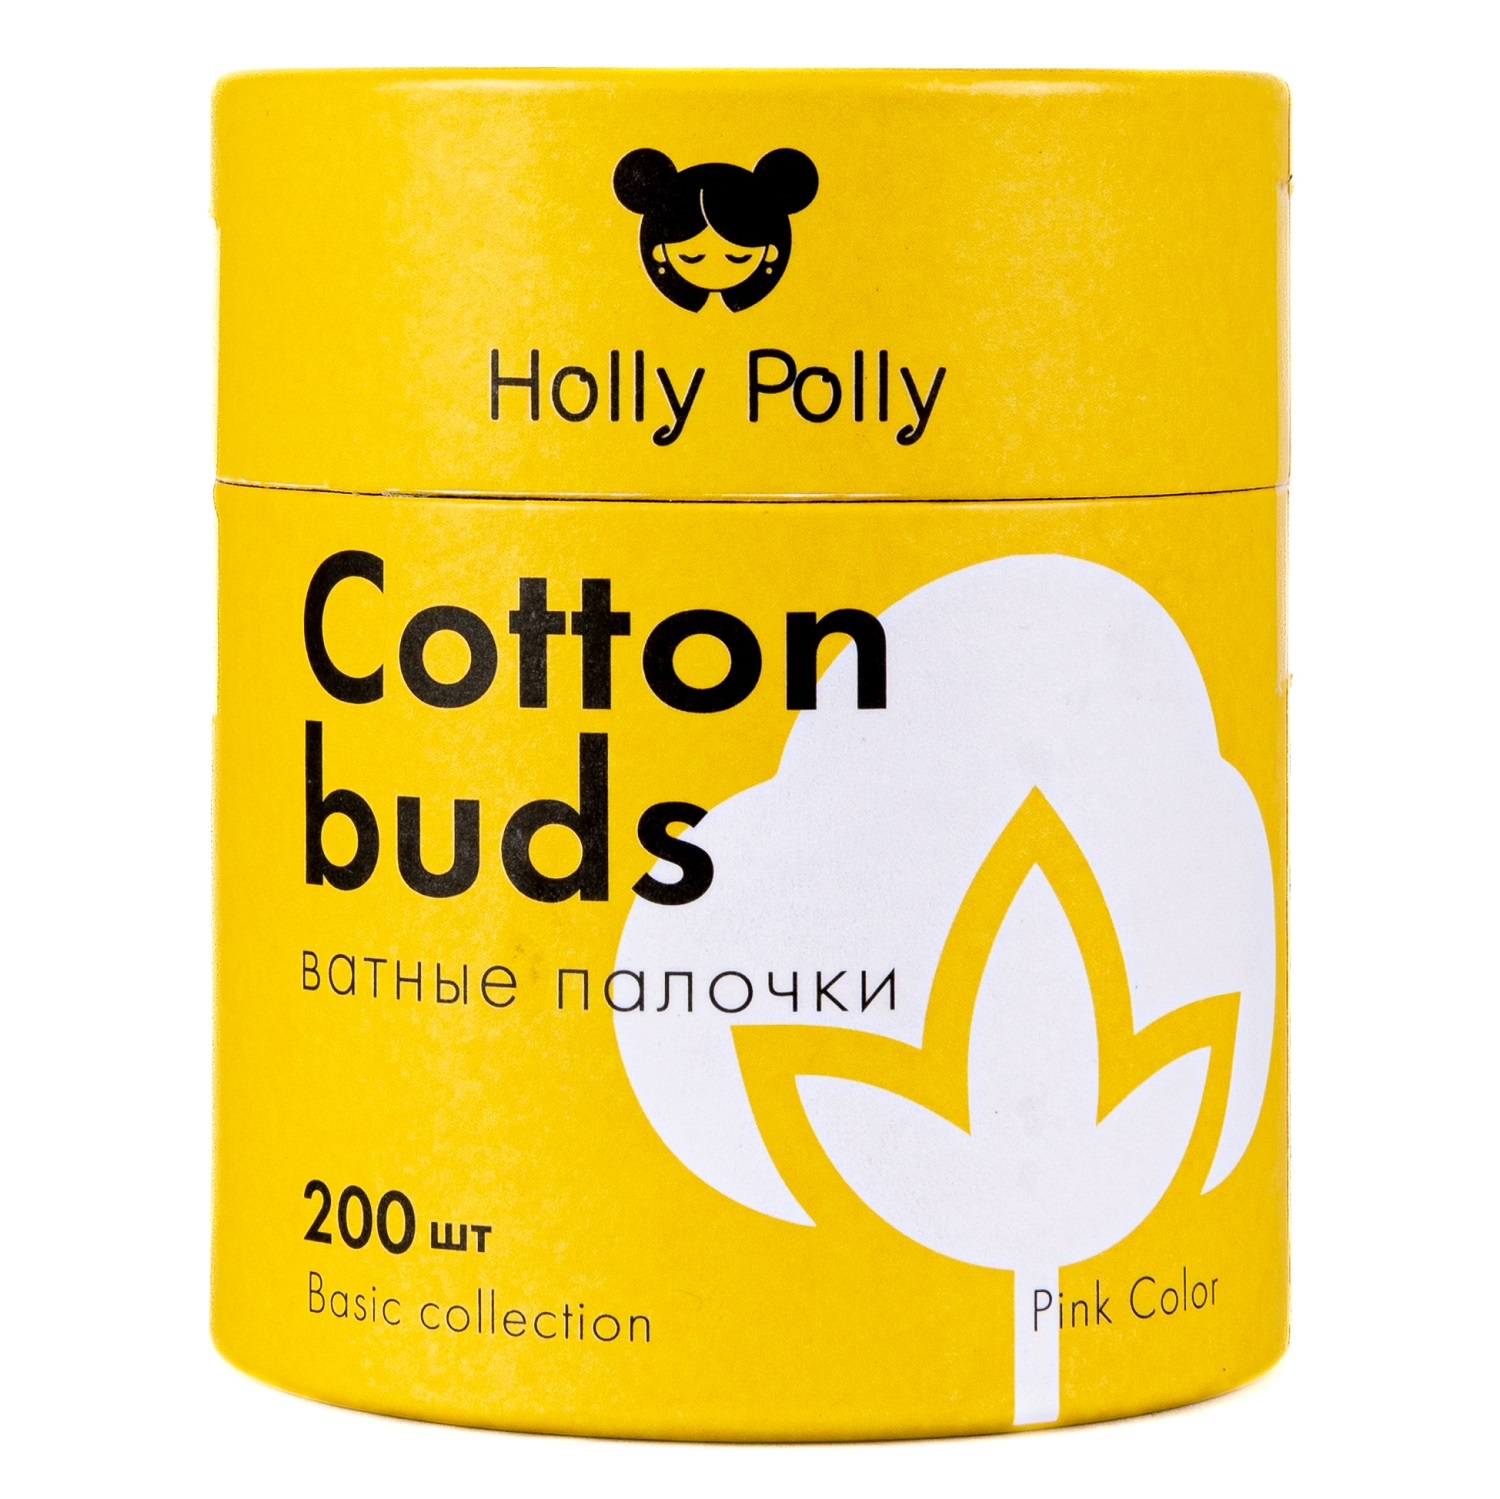 Holly Polly Косметические ватные палочки бамбуковые розовые, 200 шт (Holly Polly, Cotton Pads & Buds) holly polly палочки holly polly ватные бамбуковые косметические розовые 200 шт